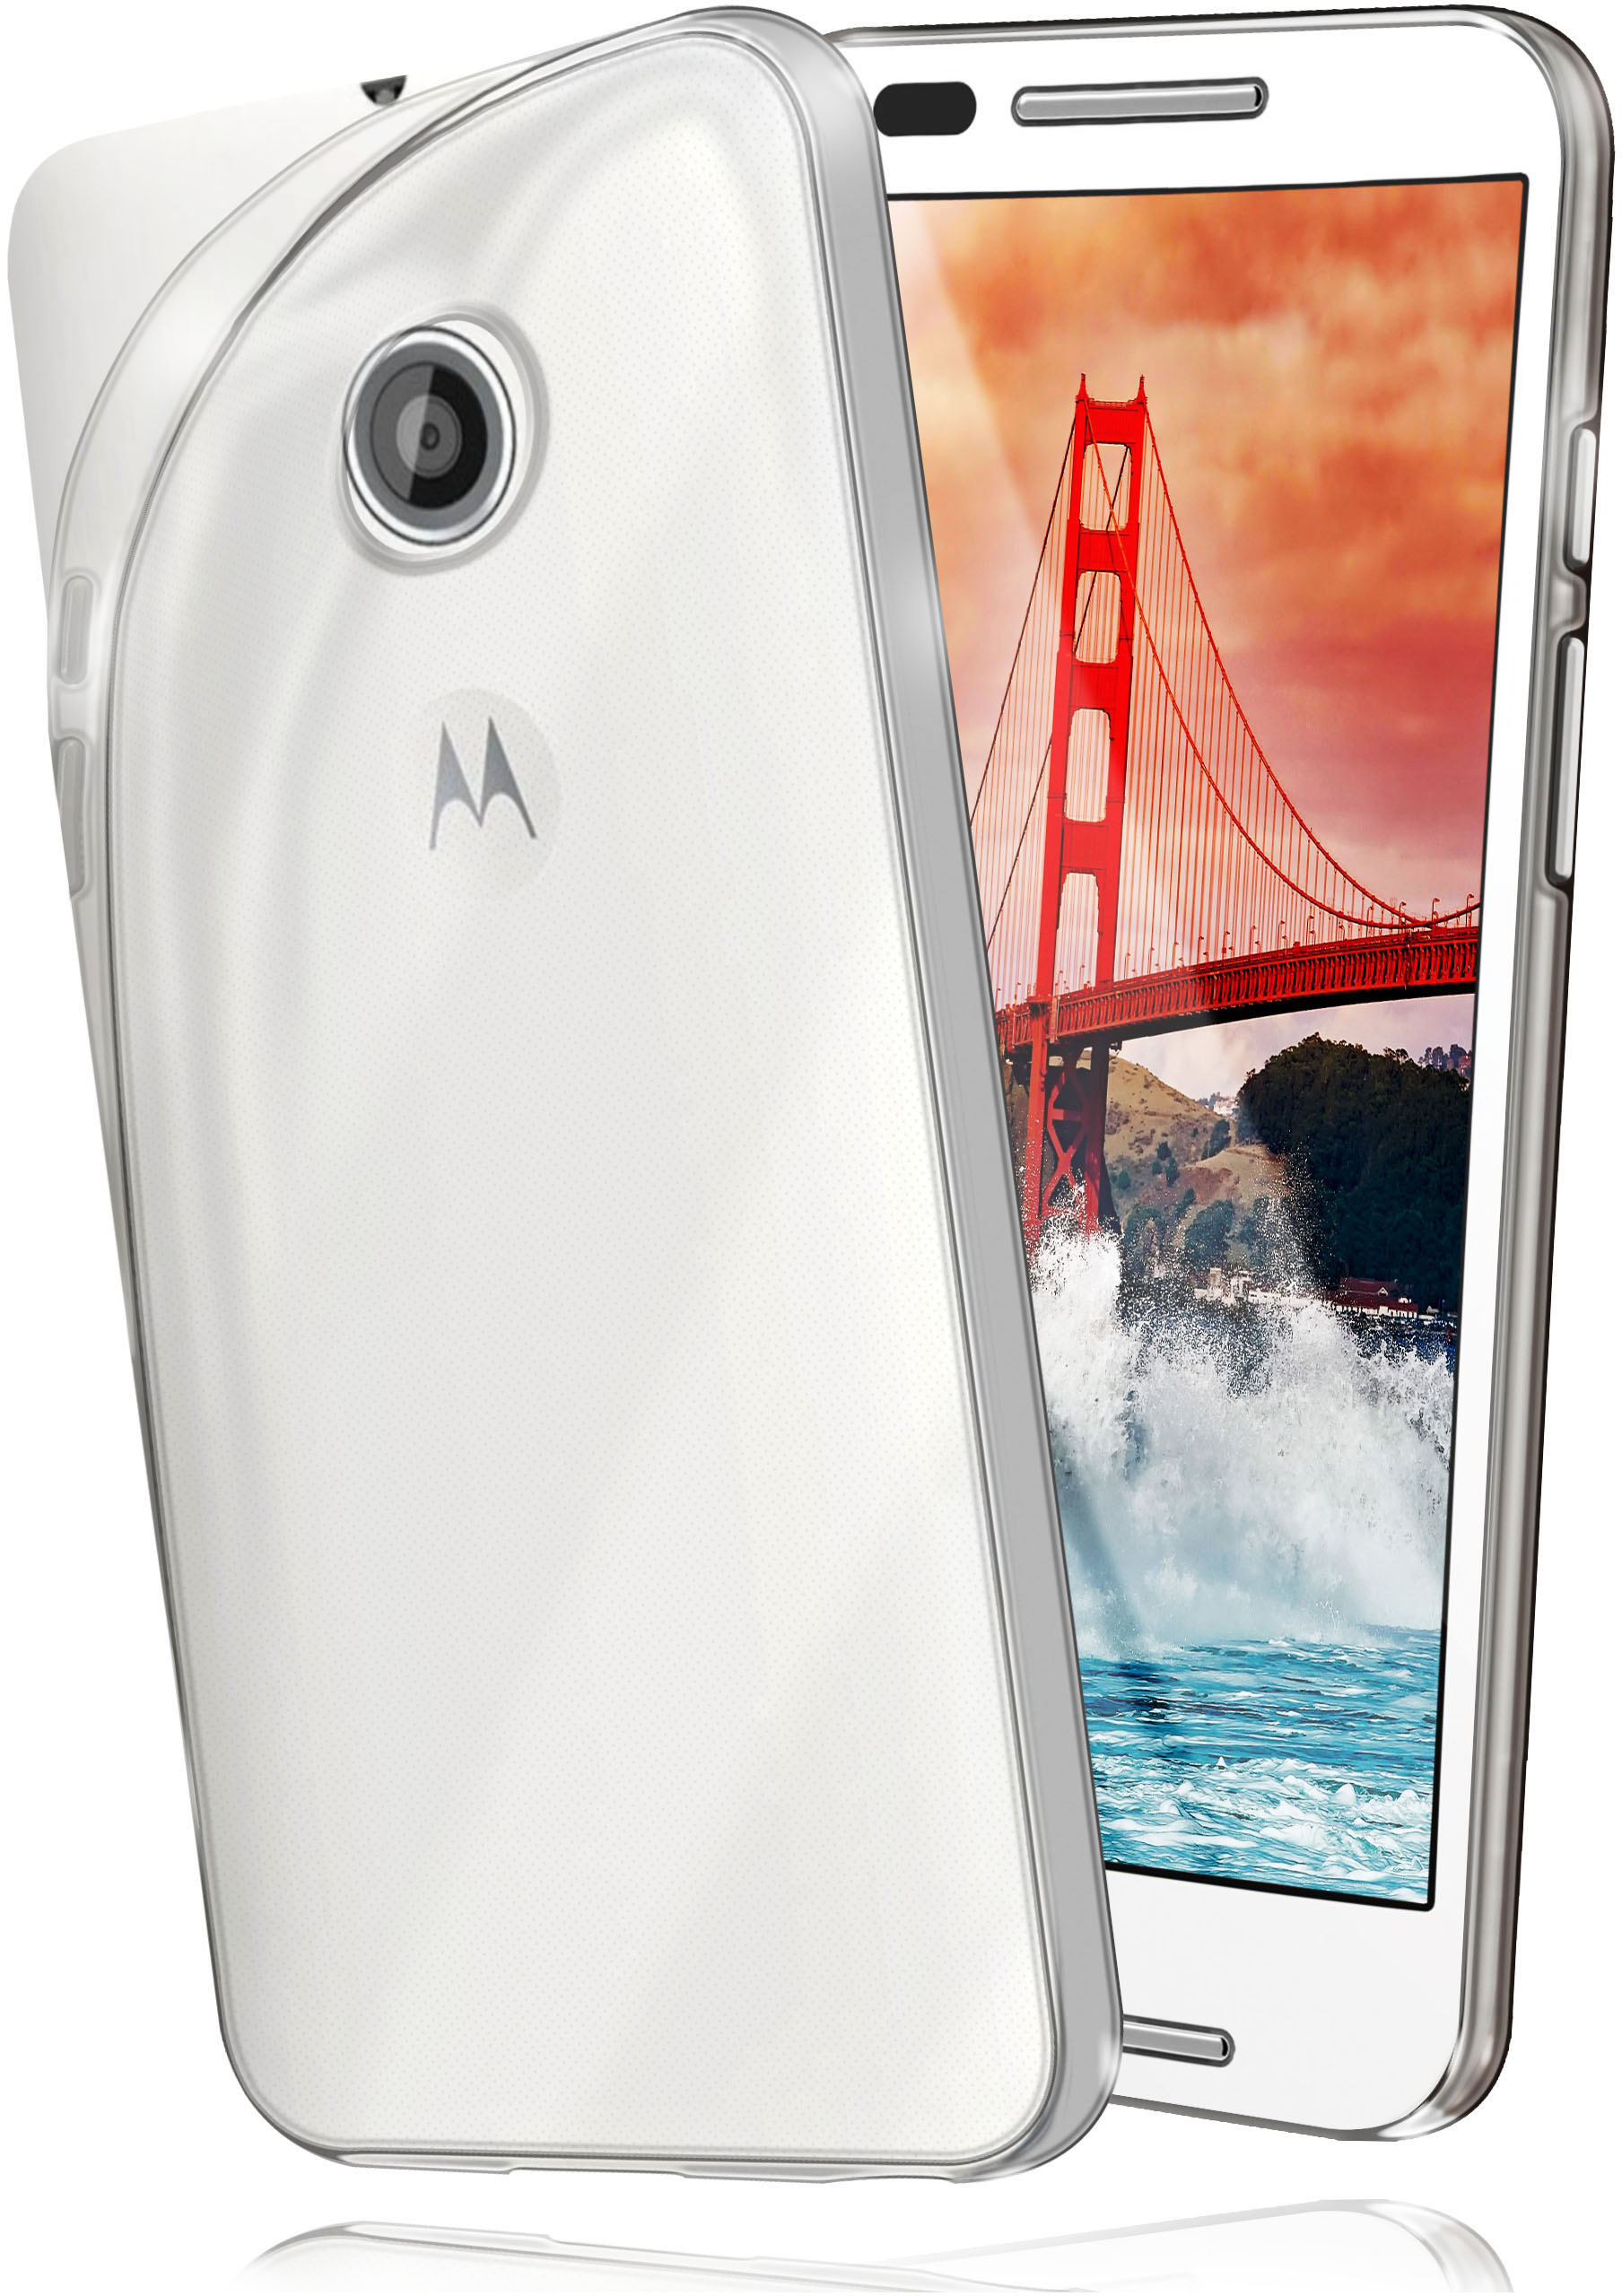 Case, Backcover, Motorola, Aero Crystal-Clear MOEX E, Moto